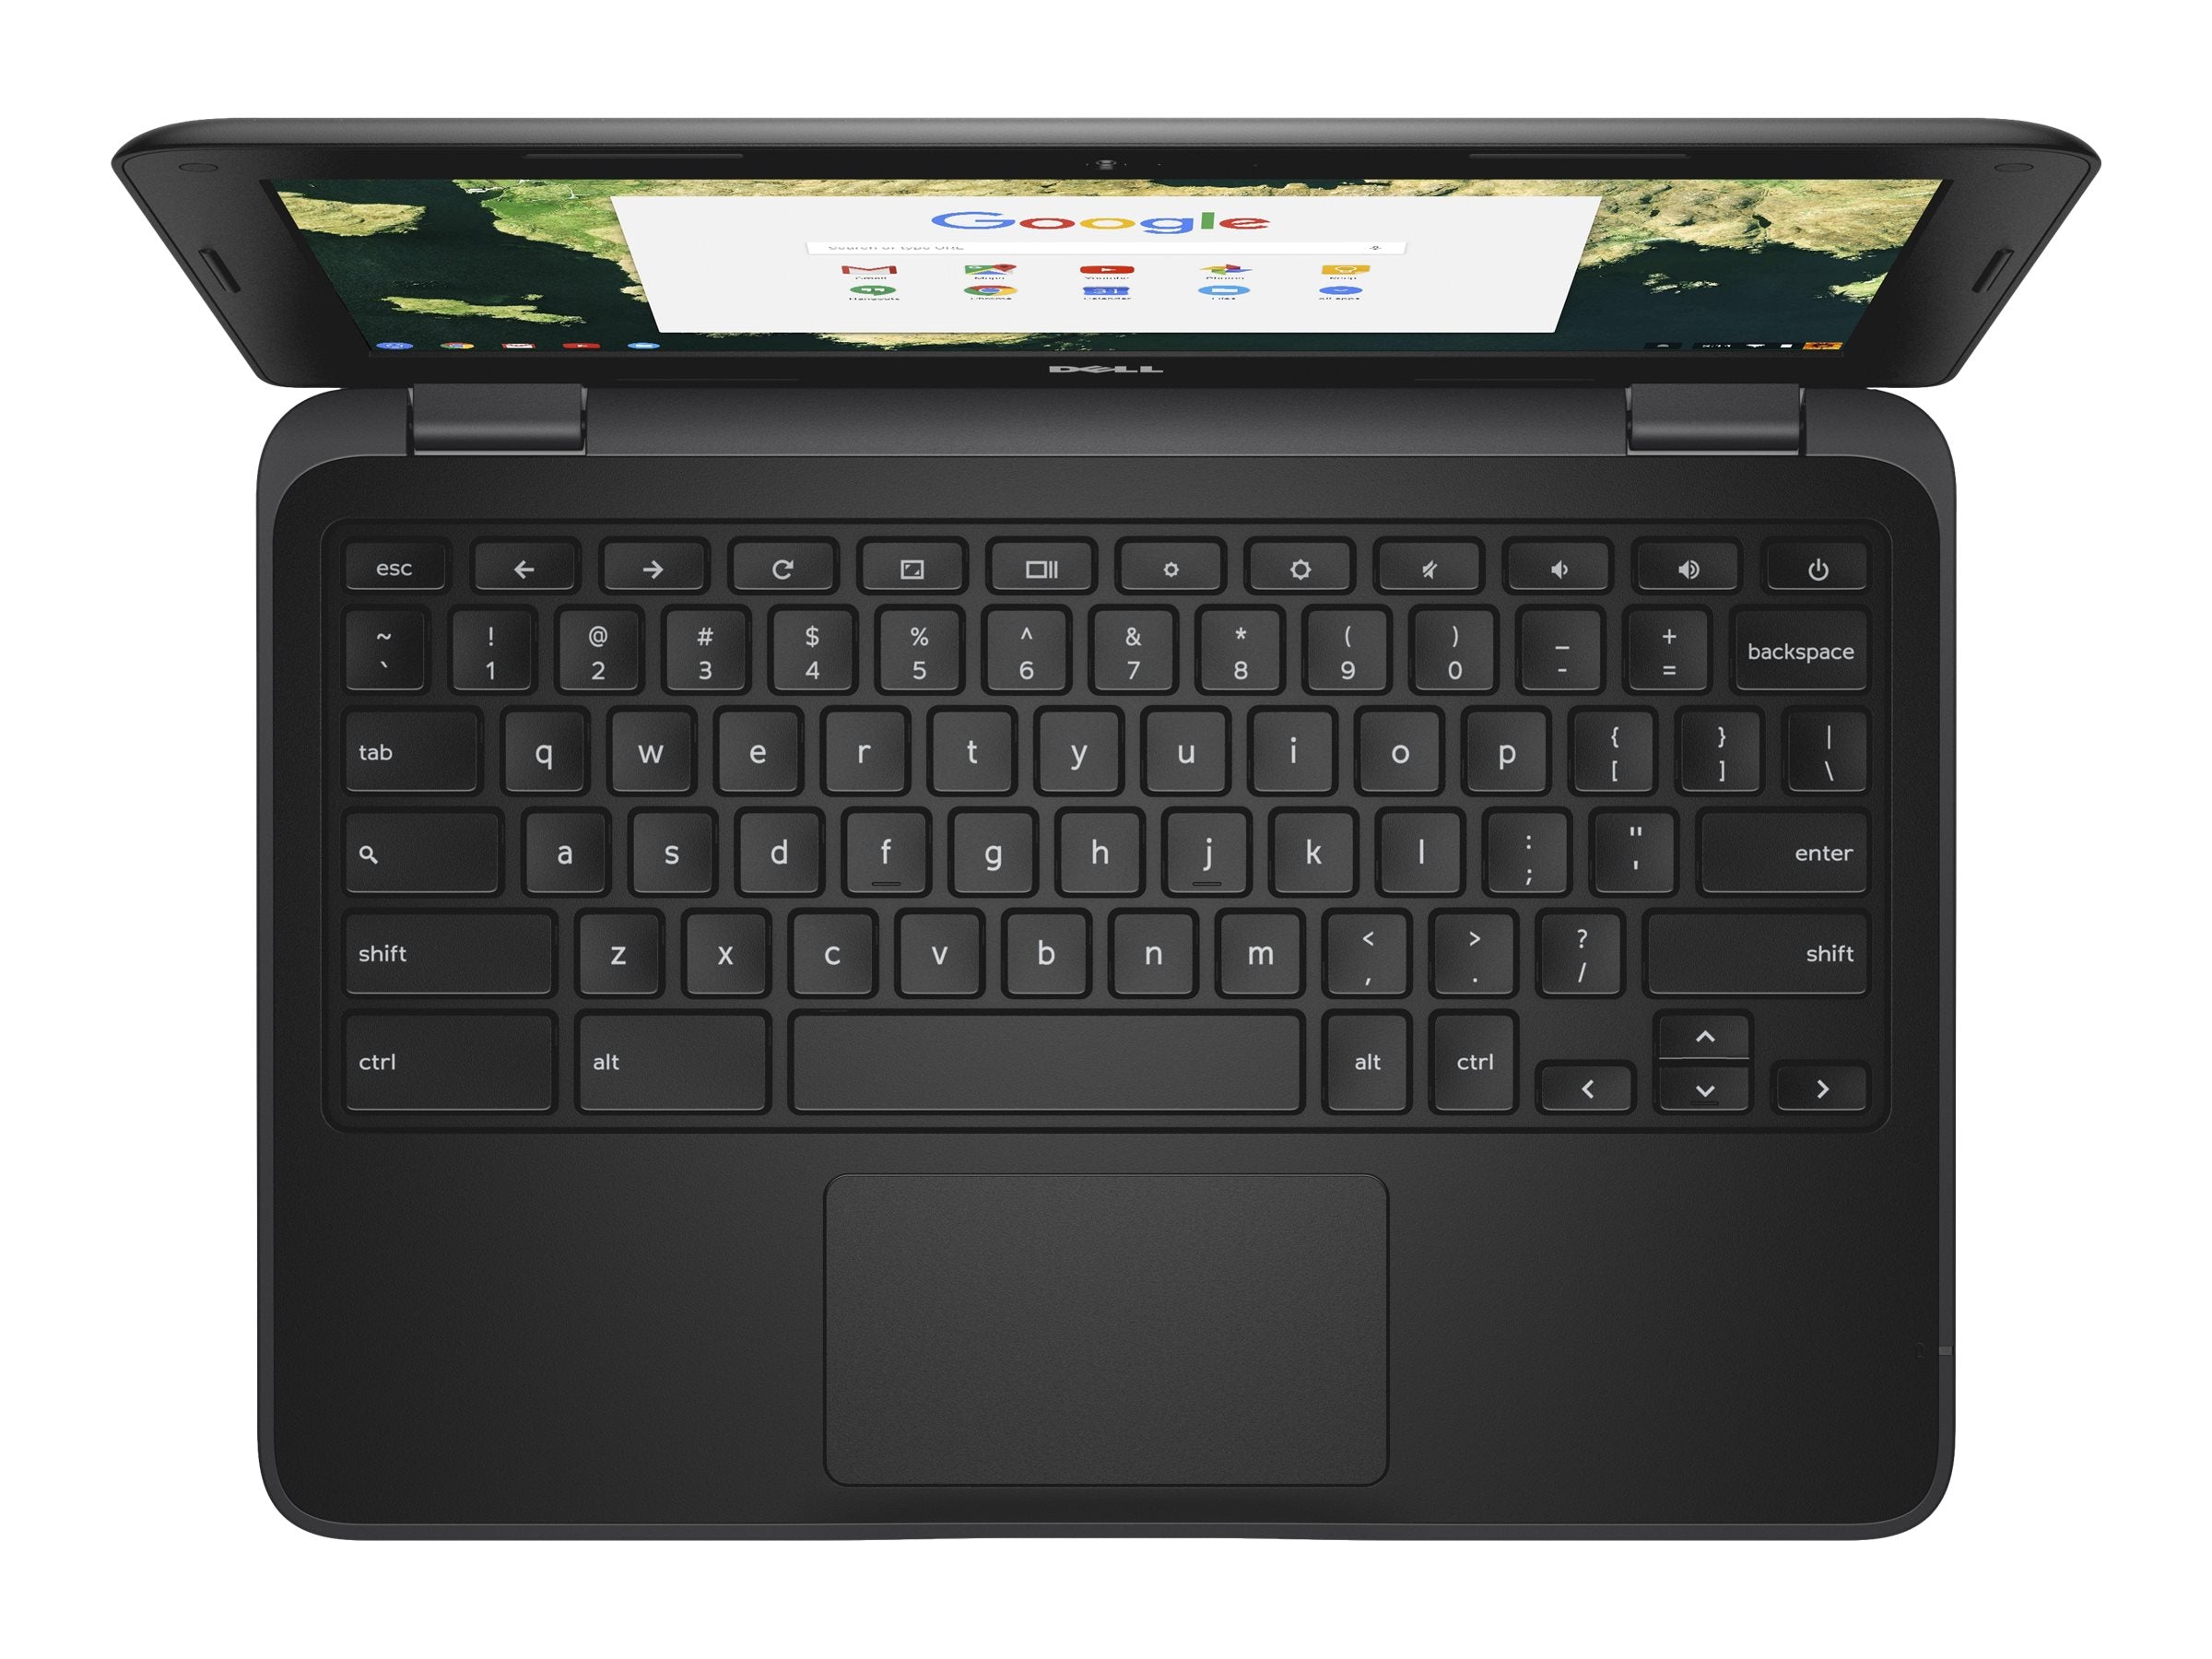 Dell Chromebook 3180 11" (2017)